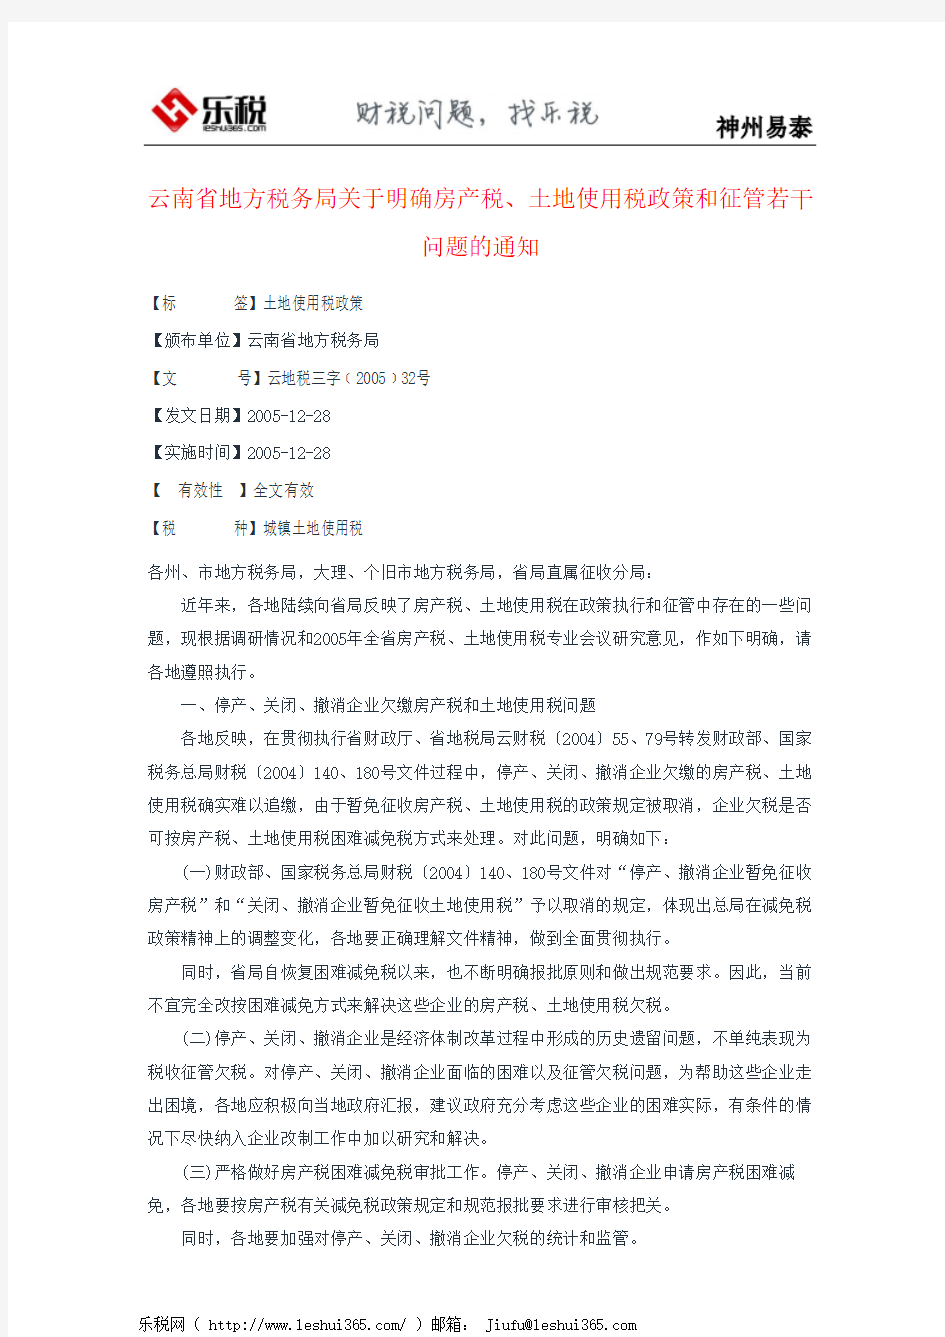 云南省地方税务局关于明确房产税、土地使用税政策和征管若干问题的通知